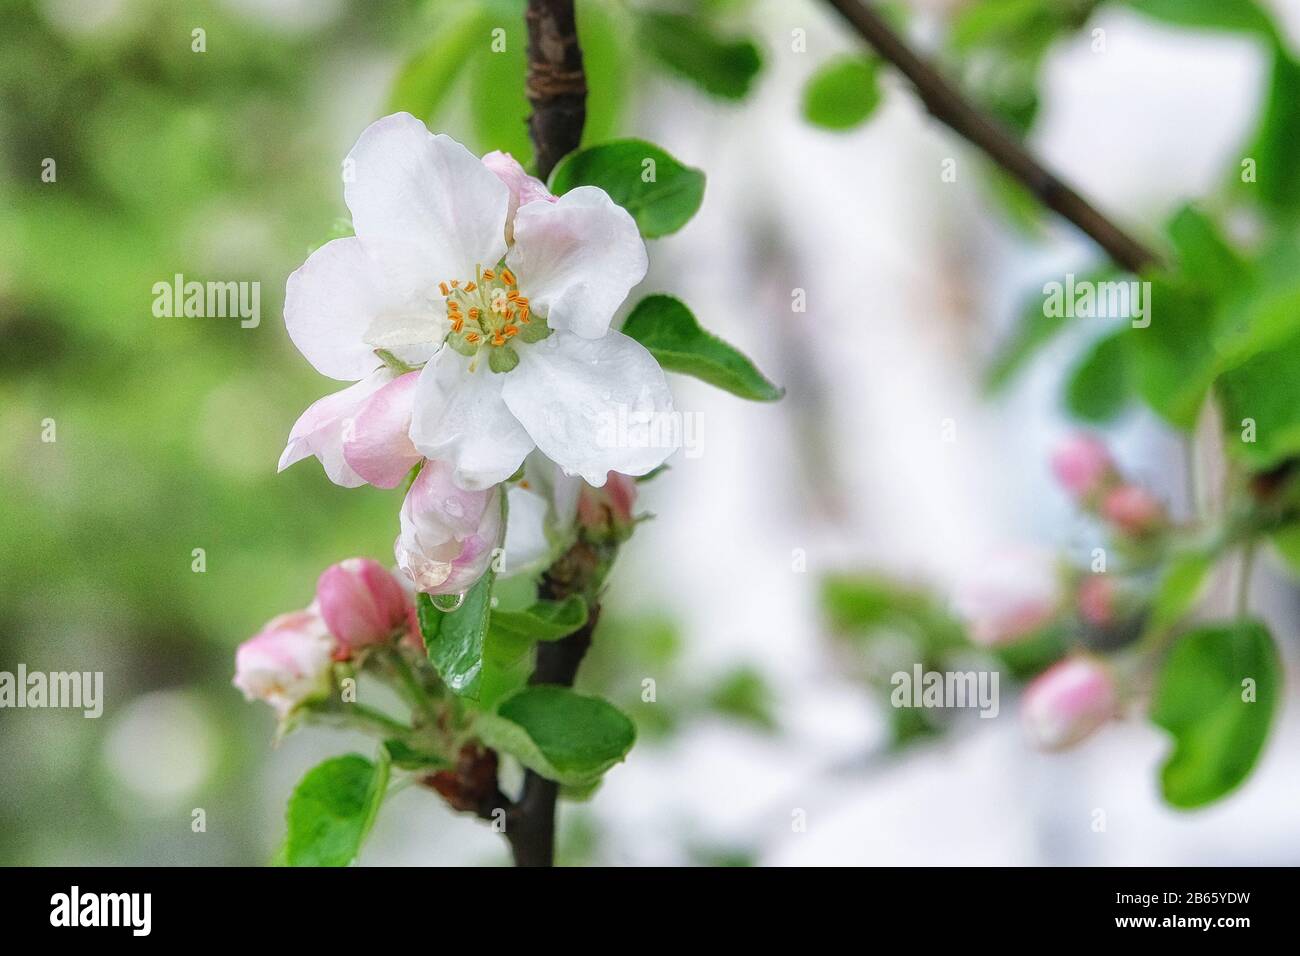 Apfelbaum blüht mit weißen Kronblättern. Frühlingshintergrund der Natur, grünes Bokeh. Grußkarte für den Tag der Frauen. Blühender Park in der Stadt. Stockfoto